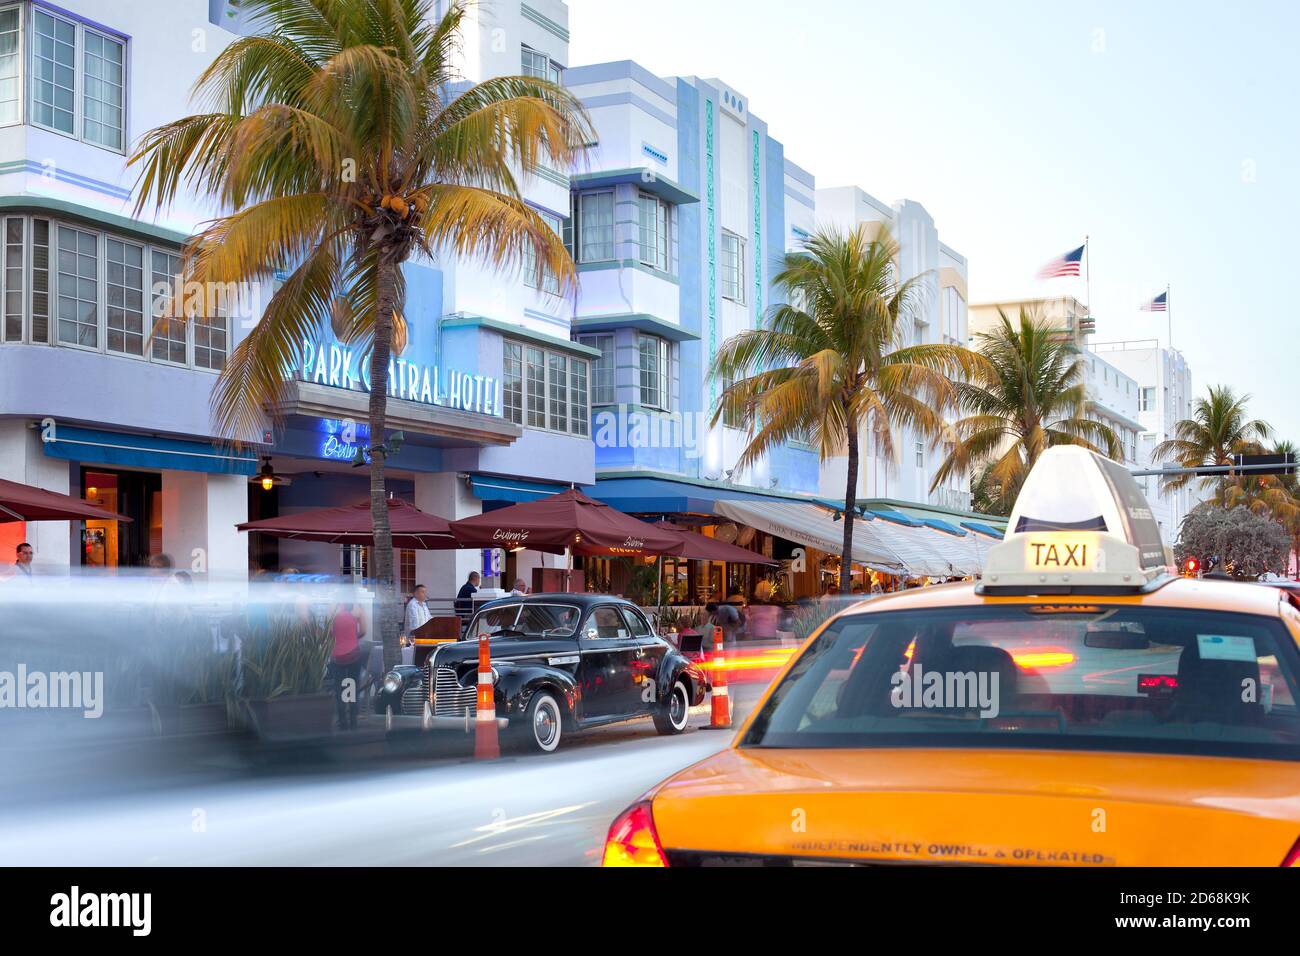 South Beach, Miami, Floride, États-Unis - Hôtels, bars et restaurants à Ocean Drive, dans le célèbre quartier art déco. Banque D'Images